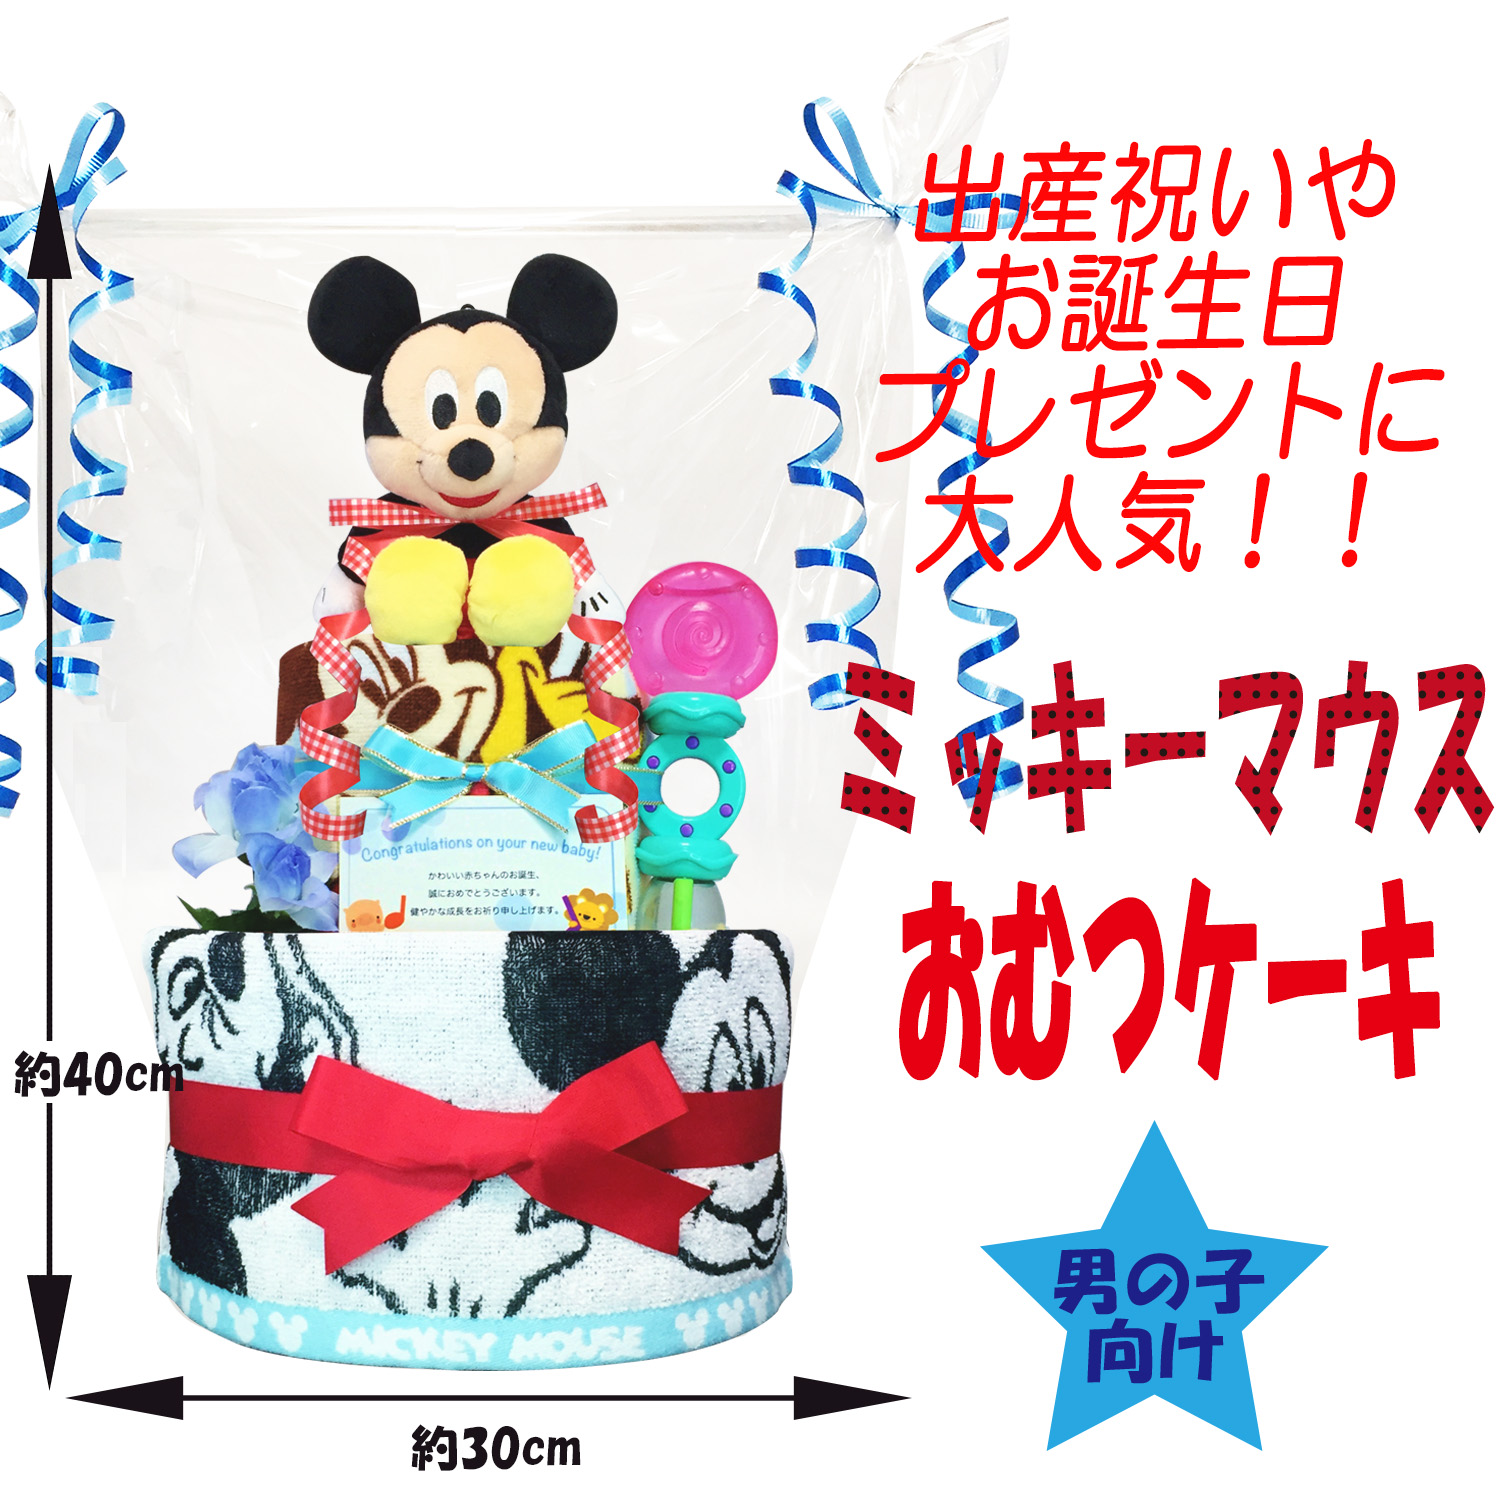 ディズニー ミッキーのおむつケーキ 男の子 2段 出産祝いに人気 赤ちゃんのお誕生日プレゼント ギフト ダイパーケーキ 送料無料 Mic3001